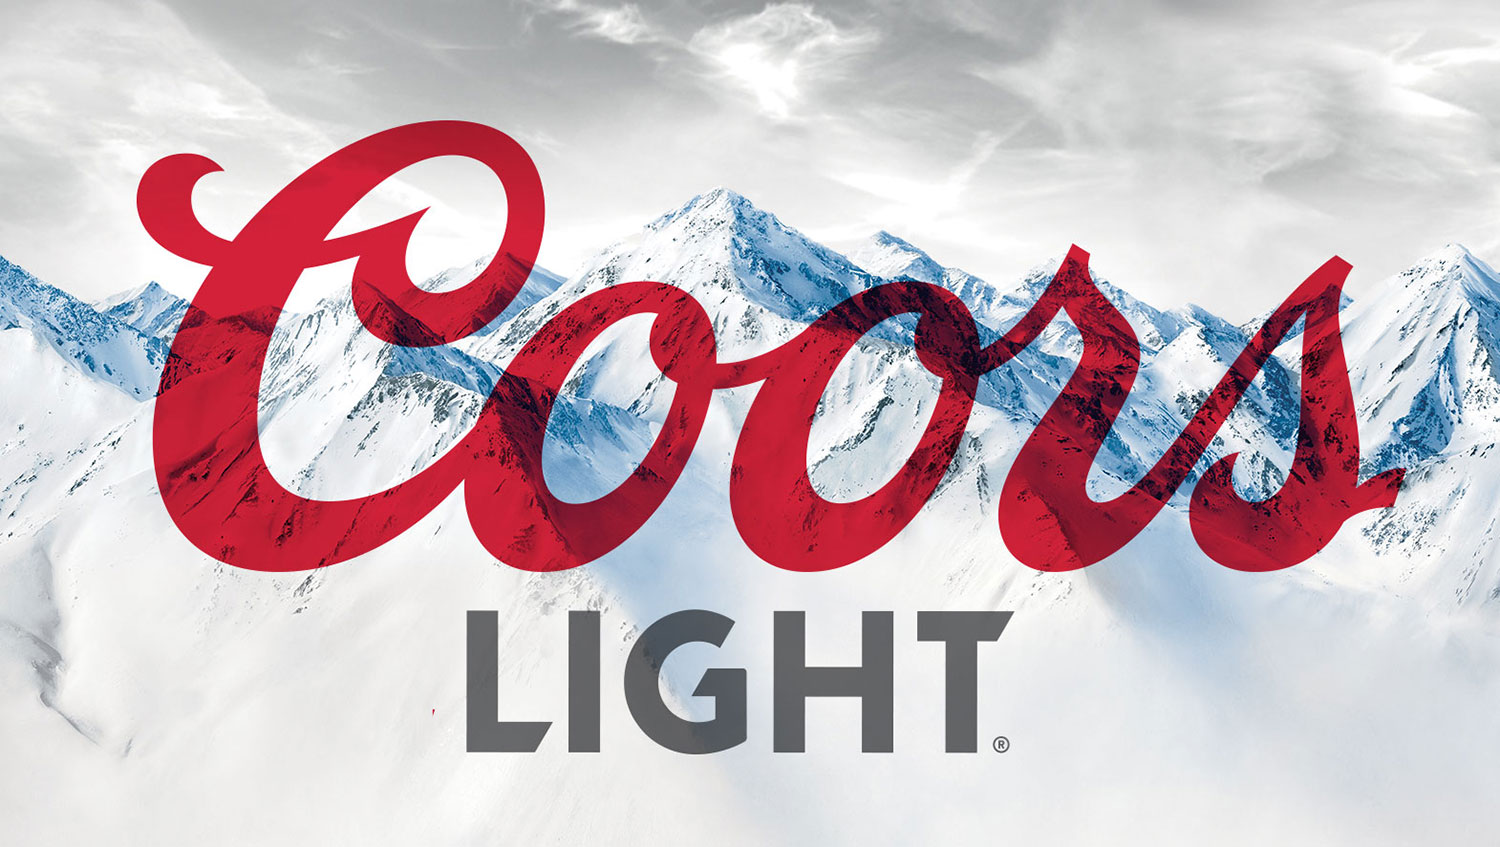 Coors Light Logo PNG-PlusPNG.